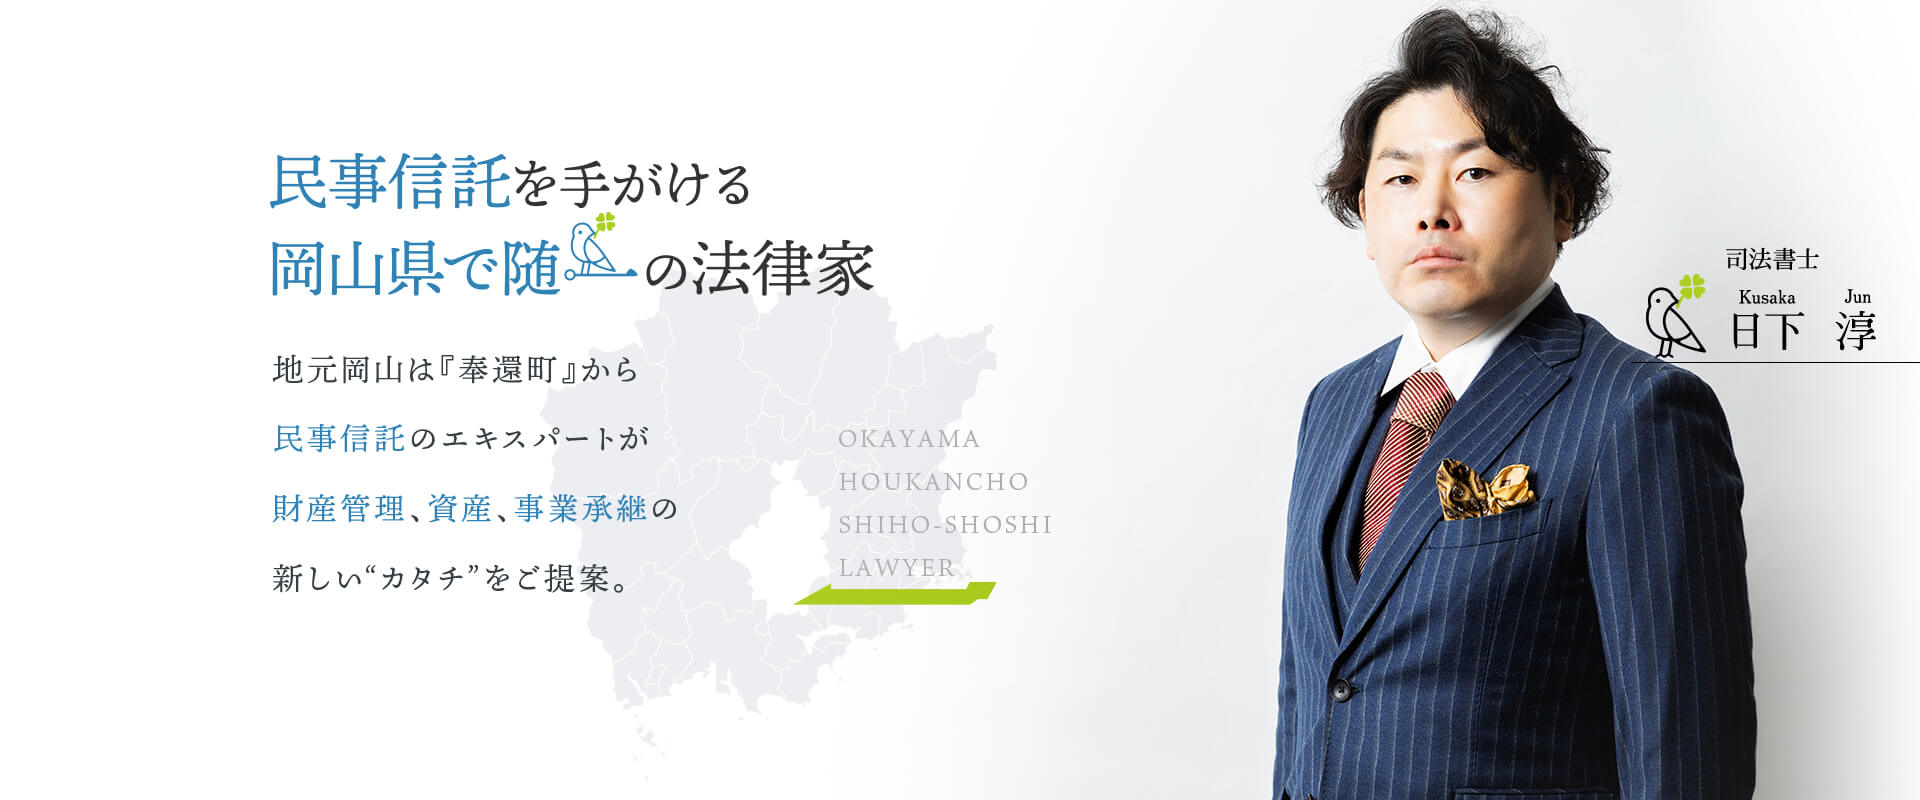 民事信託を手がける岡山県で随一の法律家